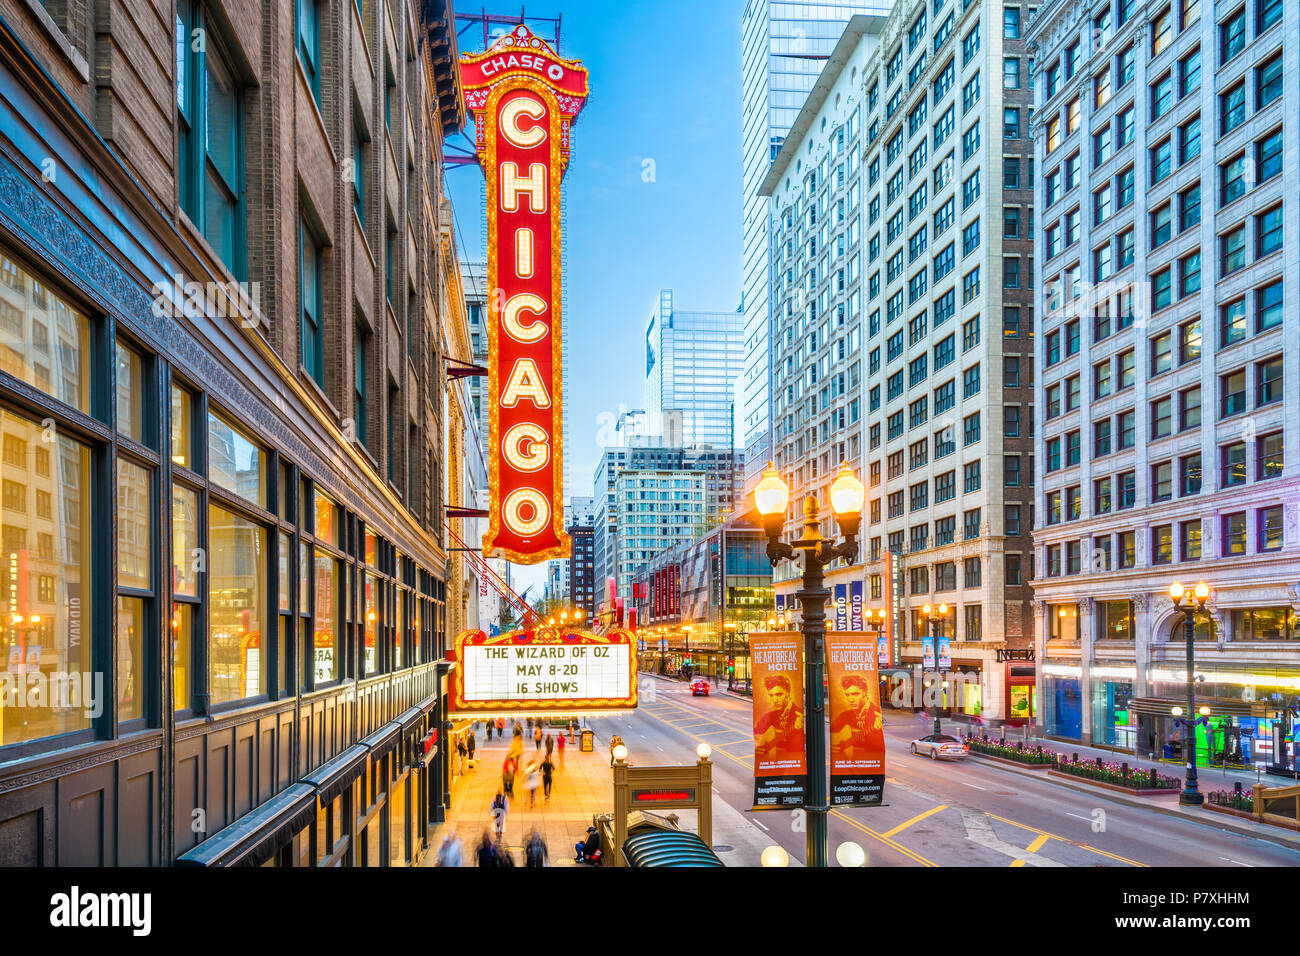 CHICAGO, Illinois - 10. MAI 2018: Das Wahrzeichen von Chicago Theater an der State Street in der Dämmerung. Die historische Theater stammt aus dem Jahre 1921. Stockfoto